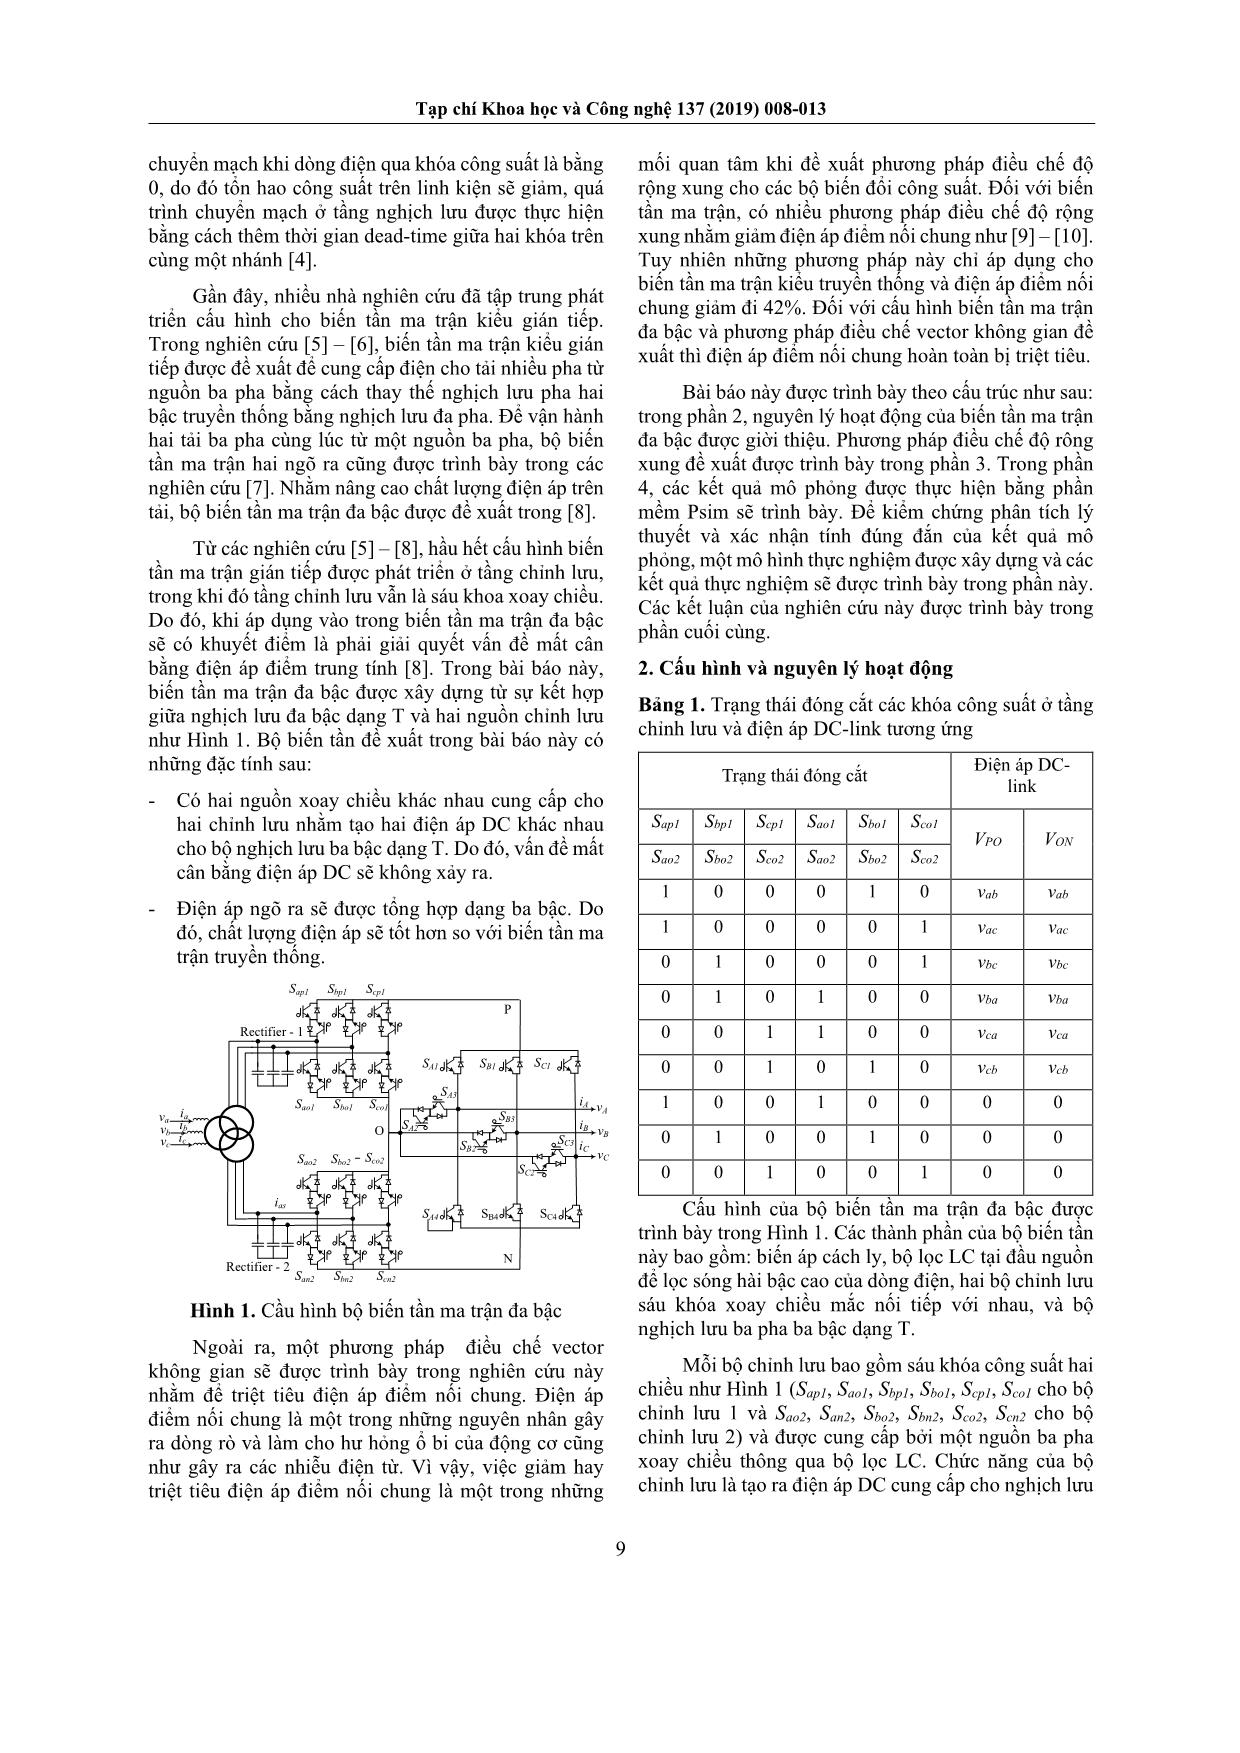 Phương pháp điều chế độ rộng xung của biến tần ma trận đa bậc nhằm triệt tiêu điện áp điểm nối chung trang 2